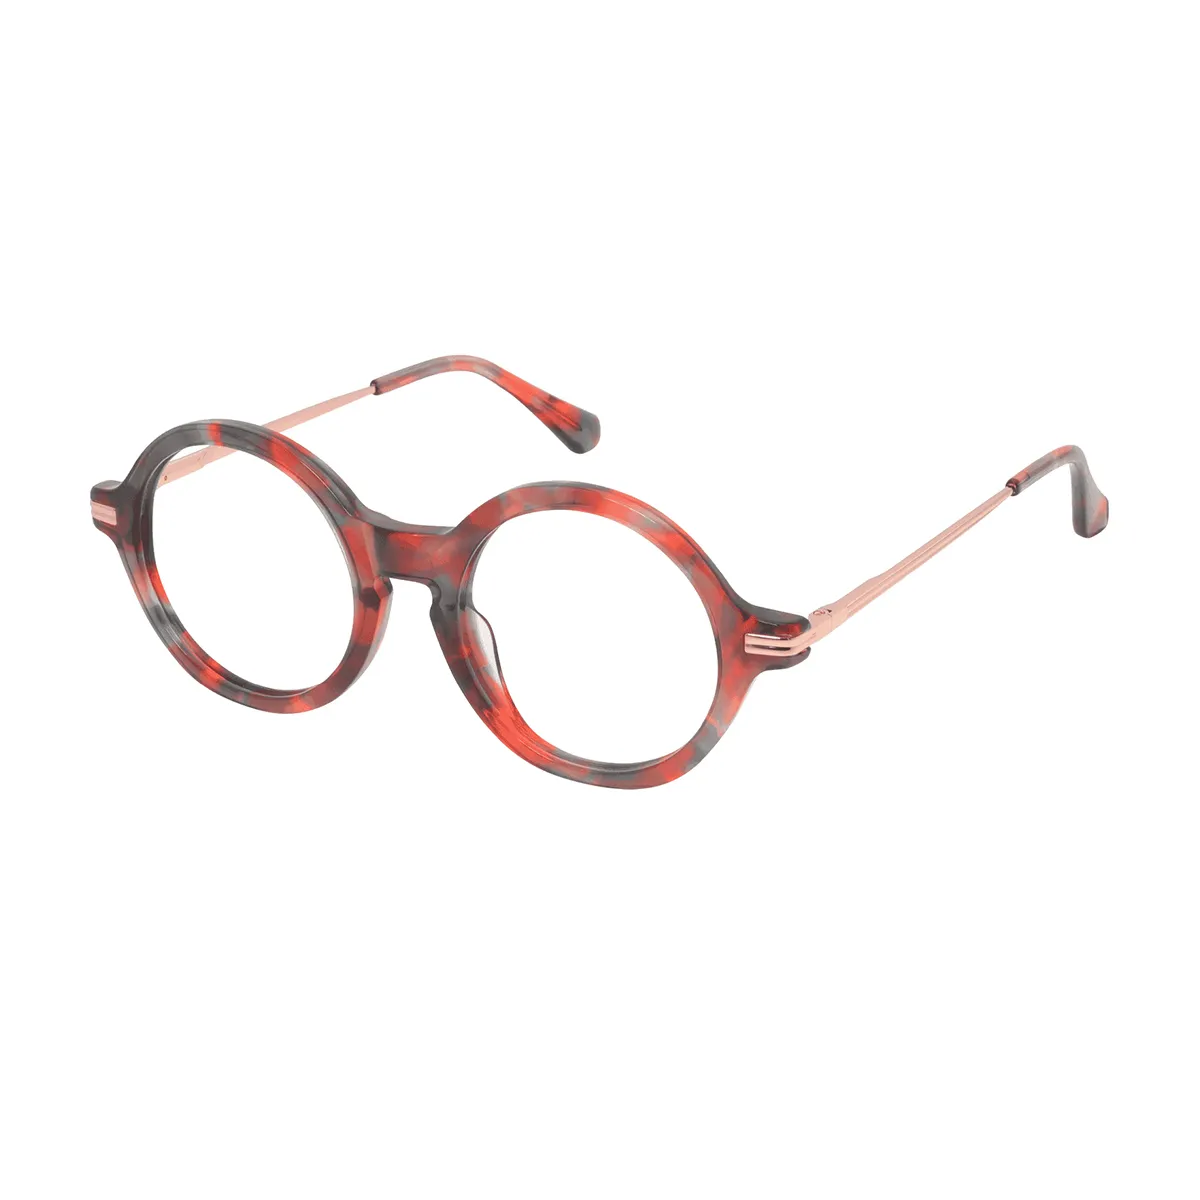 Bajer - Round  Glasses for Men & Women